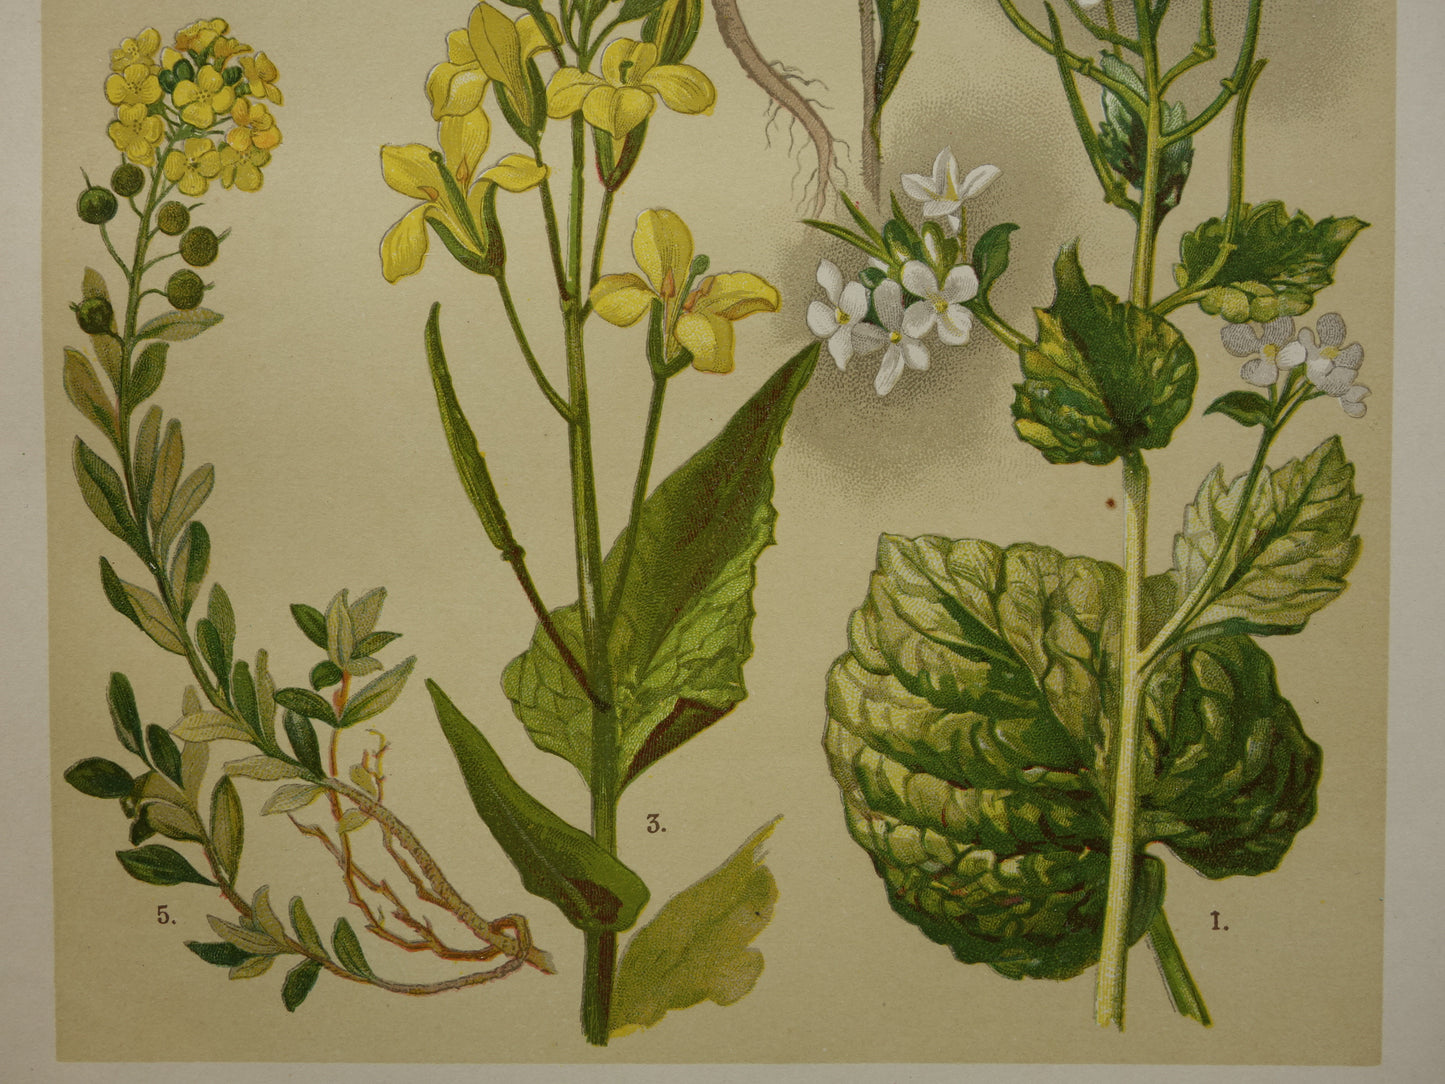 Oude botanische prent van witte en gele bloemen uit 1911 originele antieke illustratie botanie prenten bloem